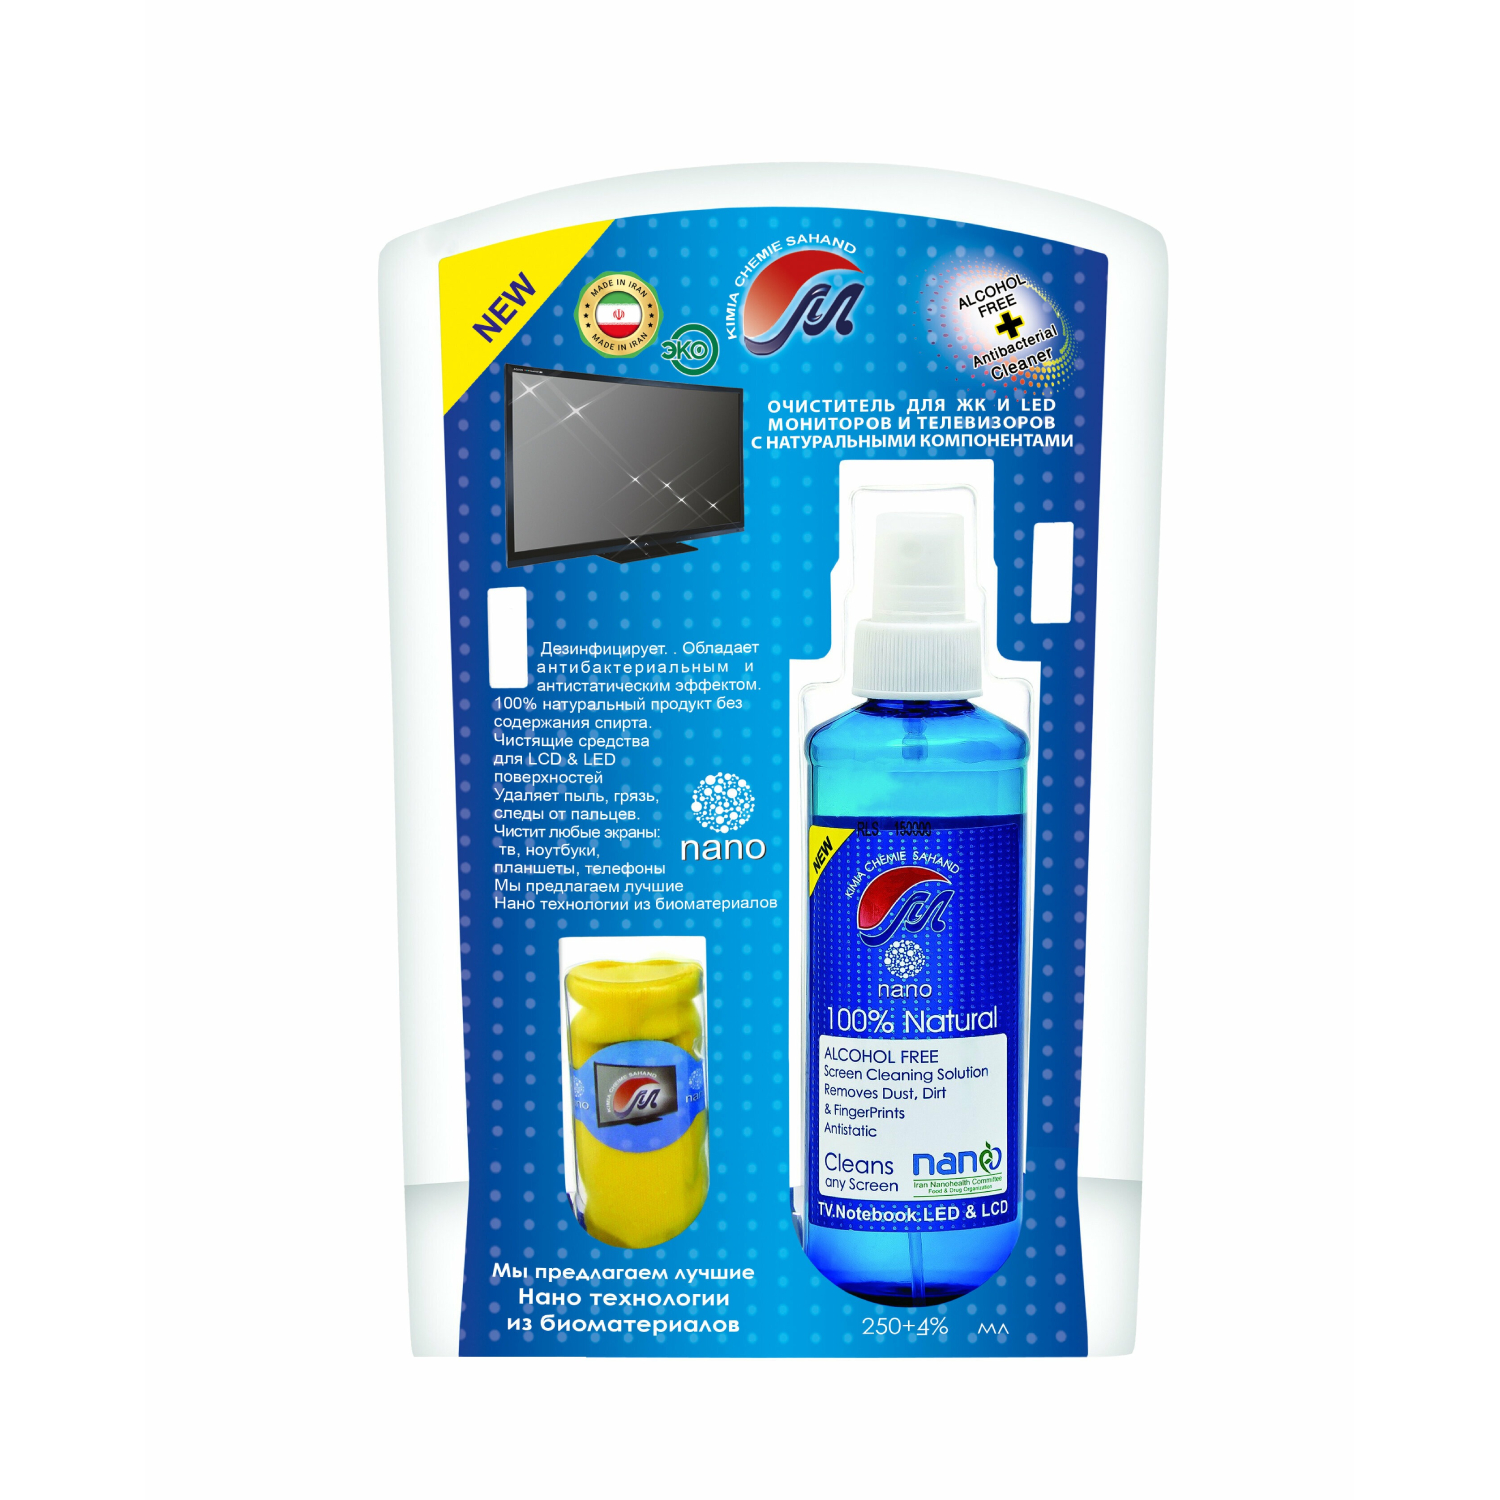 Очиститель Mehrtash для ЖК и LED мониторов и телевизоров с натуральными компонентами 75 мл цена и фото